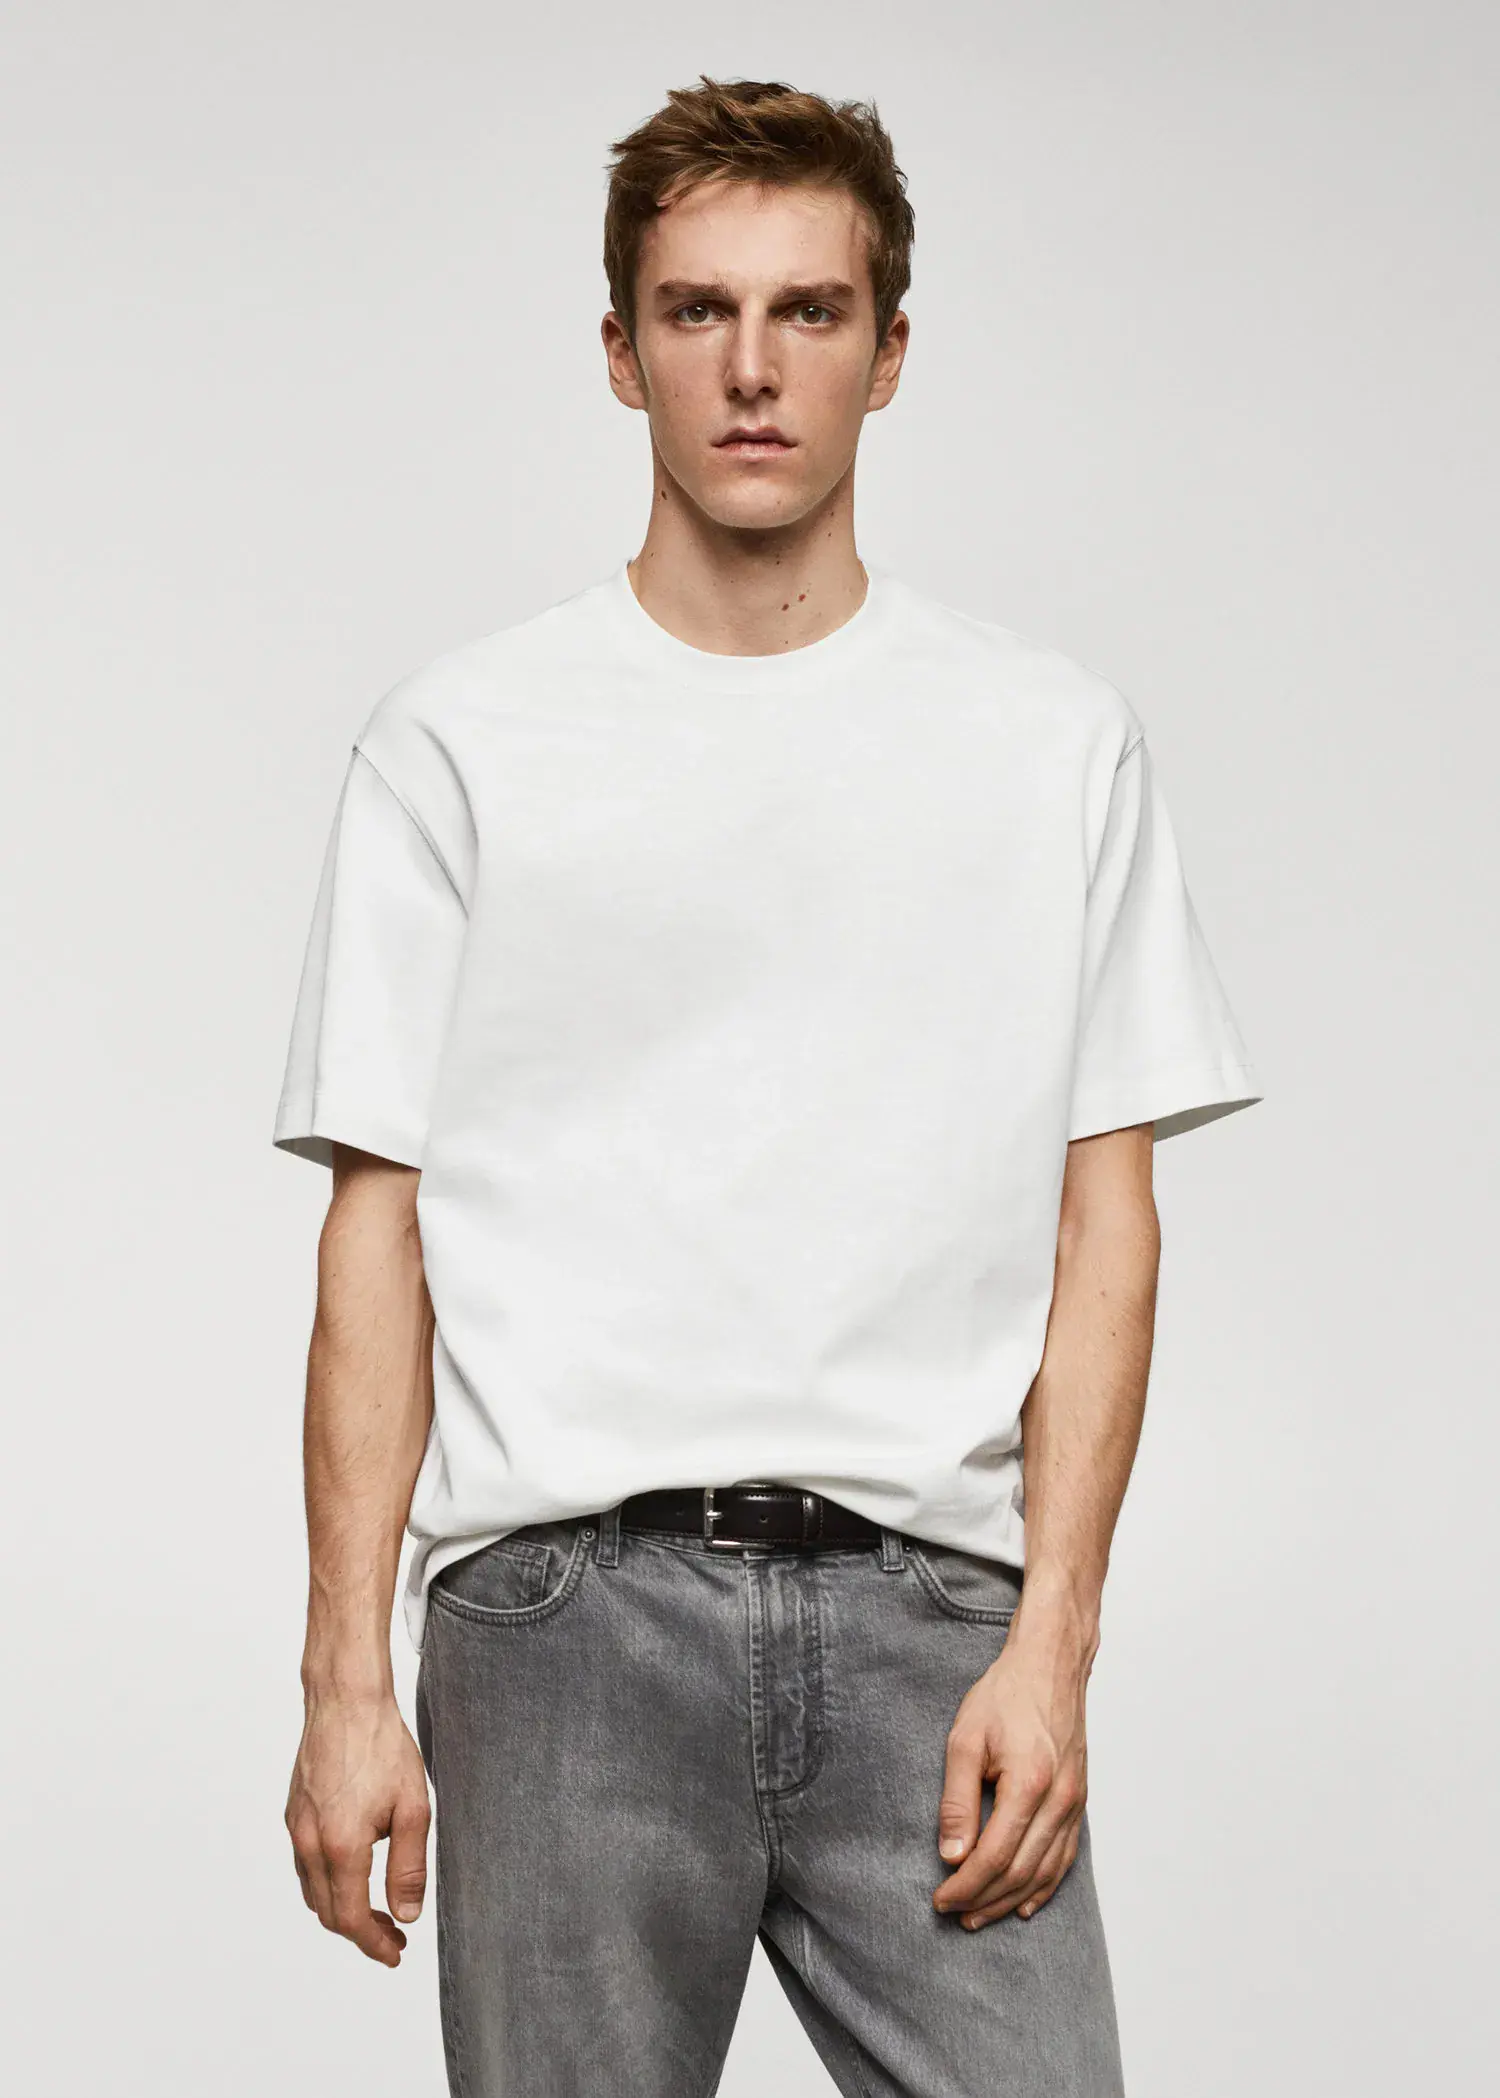 Mango T-shirt básica de 100% algodão relaxed fit. 1